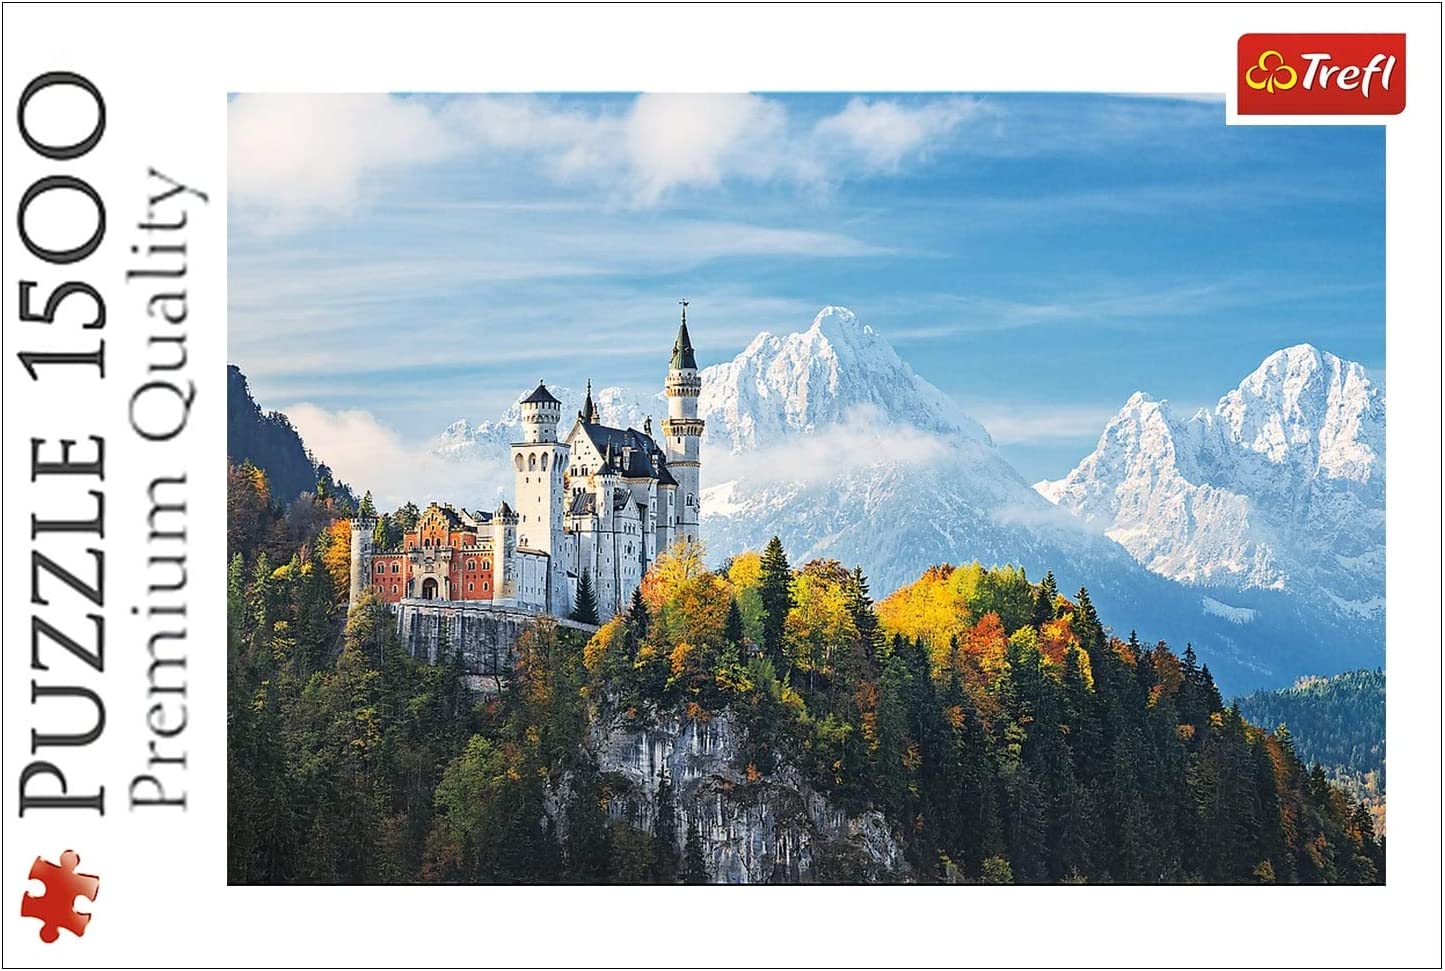 Trefl, Puzzle, Bayerische Alpen, 1500 Teile, Premium Quality neu